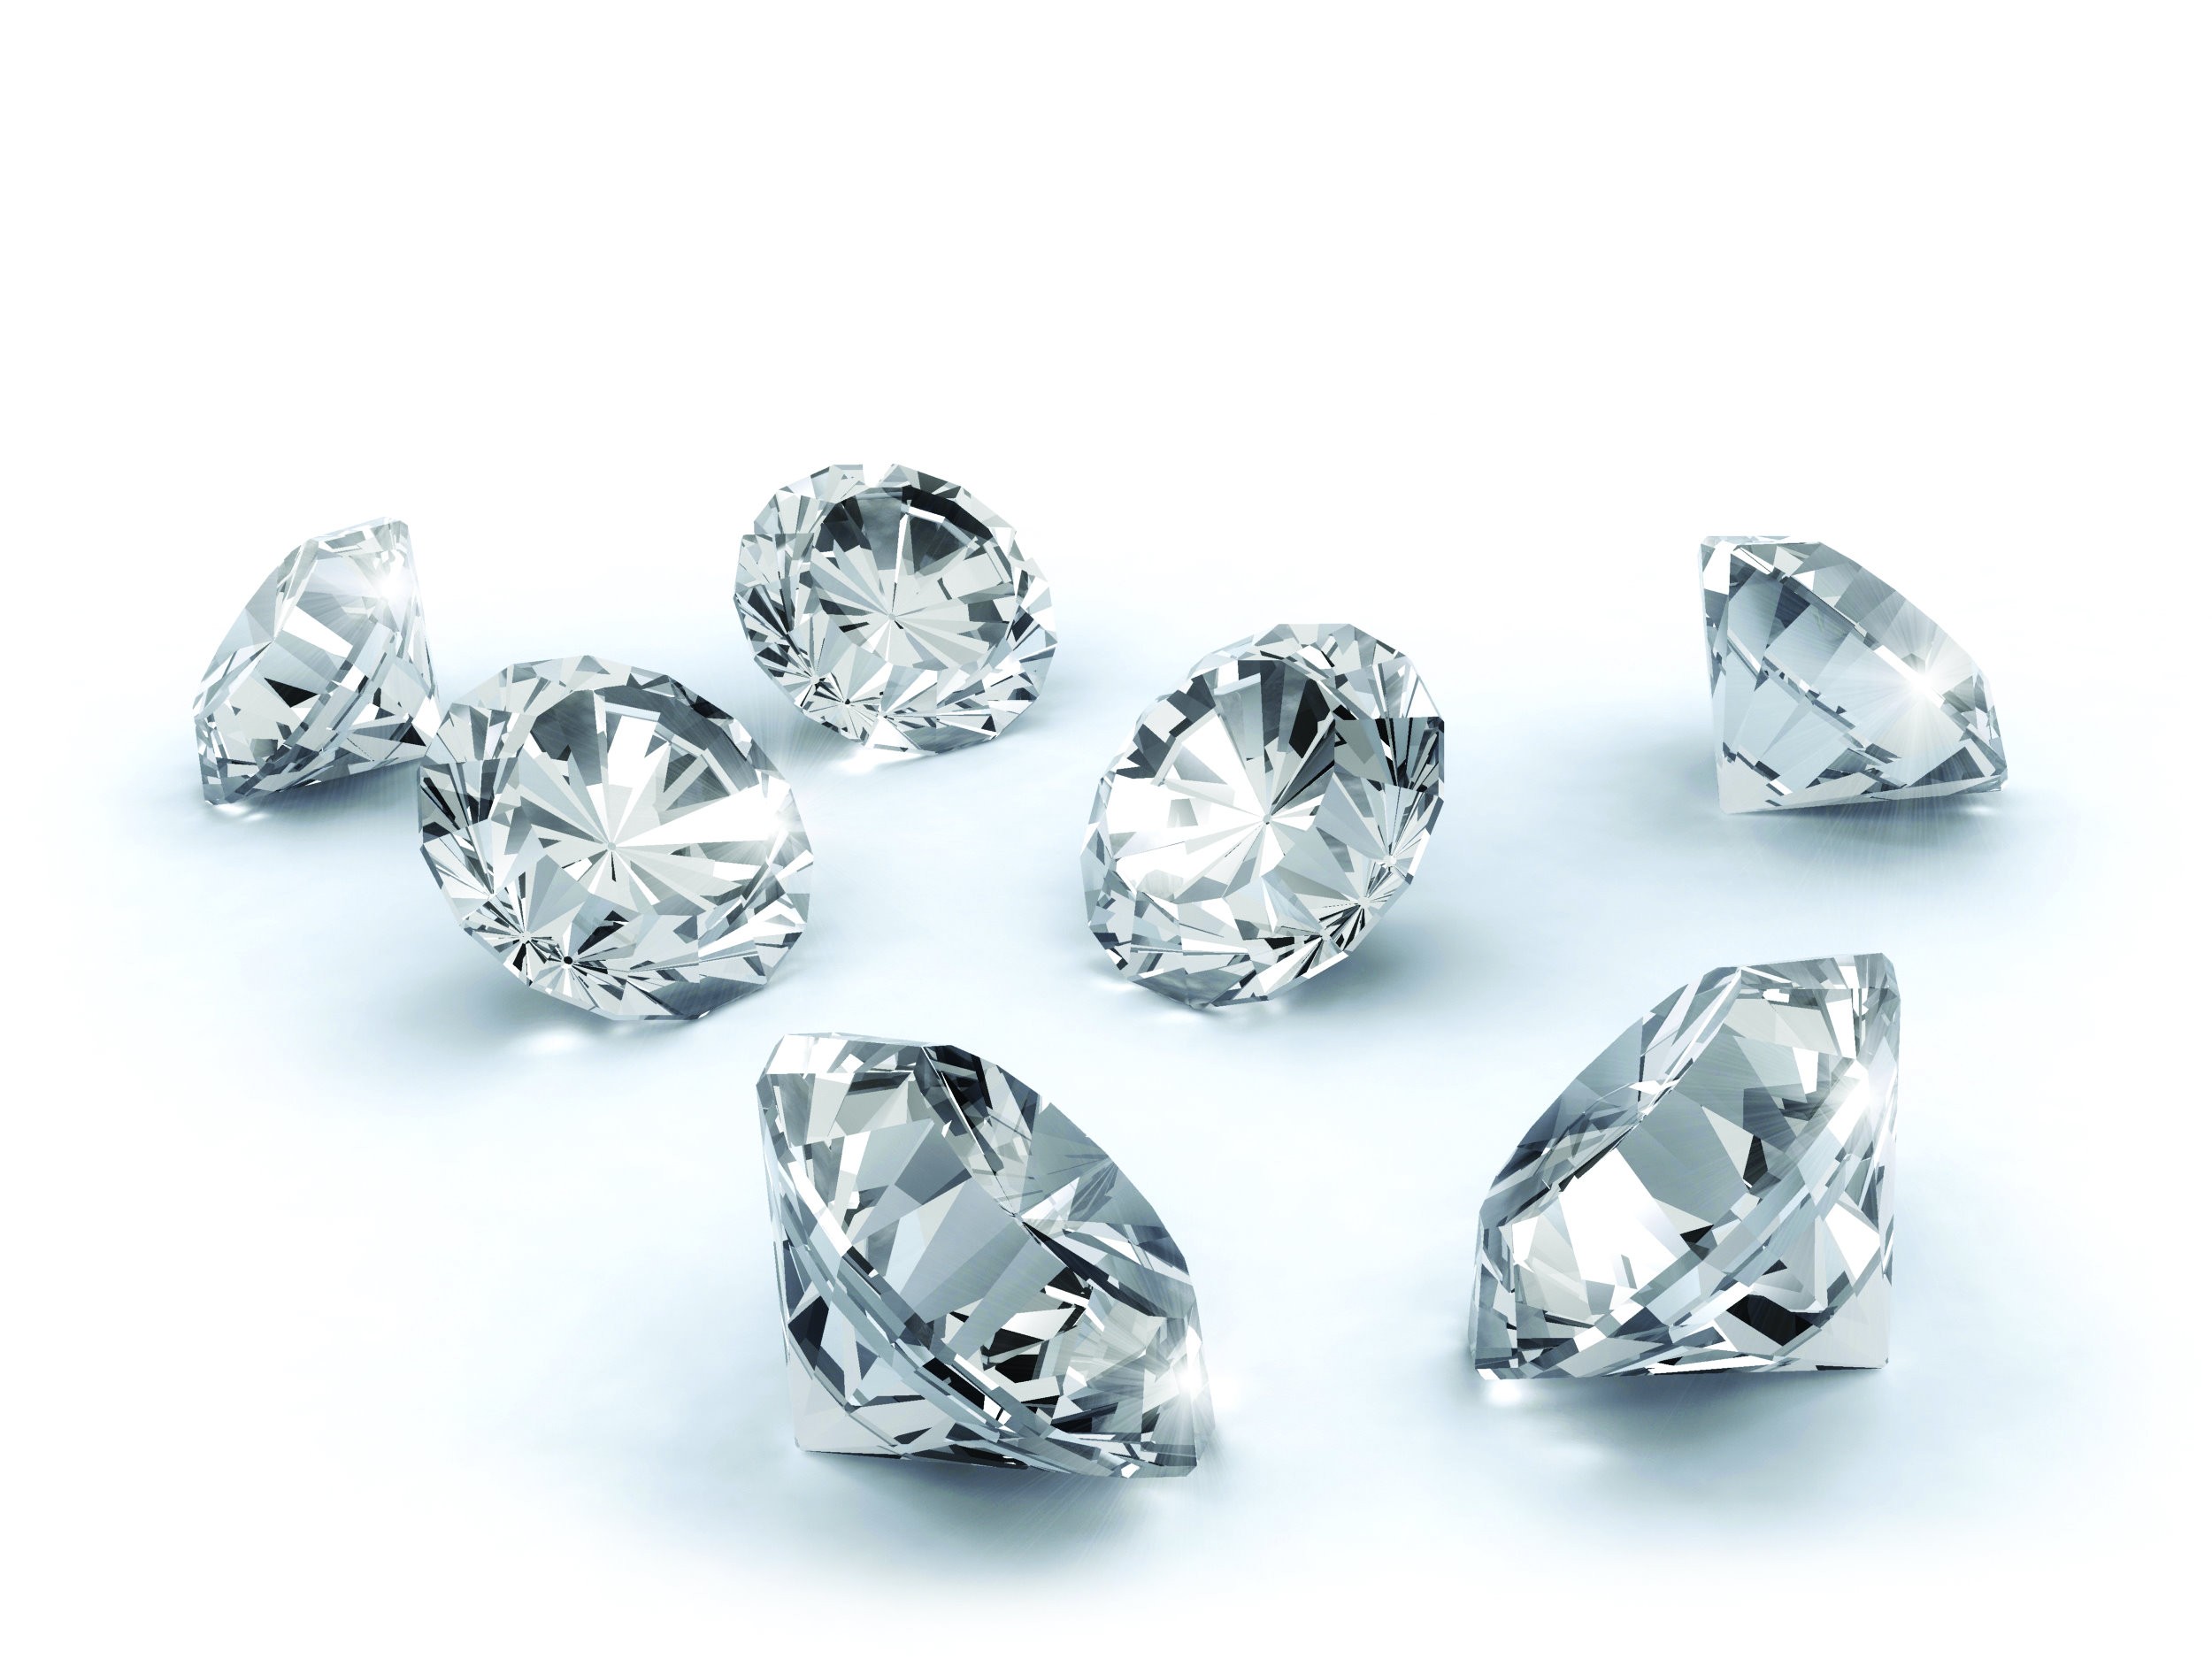 La certezza dei nostri investimenti dipende solo dai diamanti